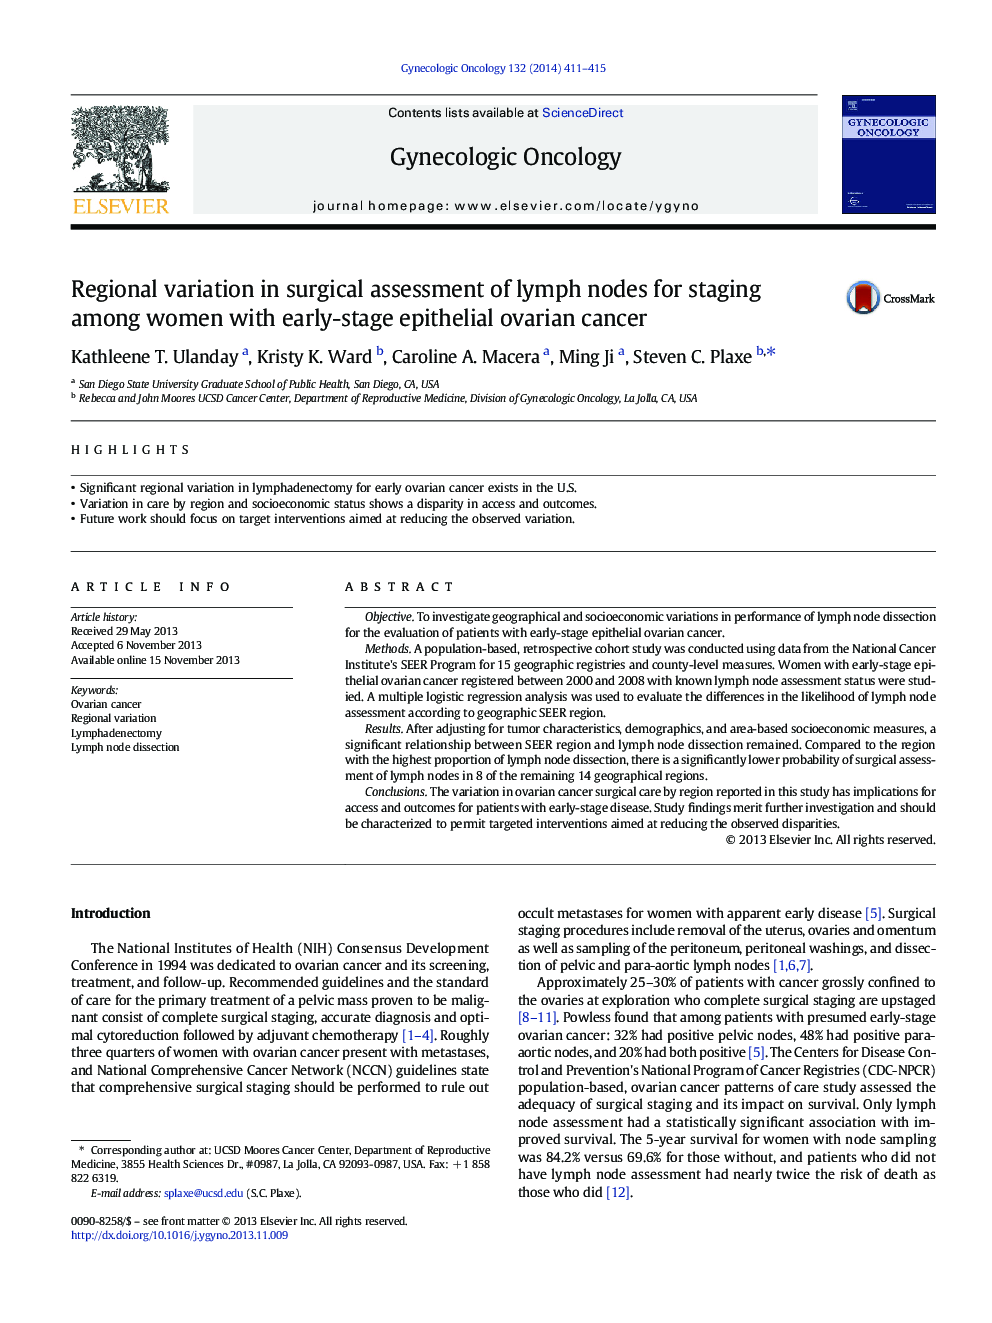 تغییرات منطقه ای در ارزیابی جراحی گره های لنفاوی برای قرارگیری در میان زنان مبتلا به سرطان تخمدان اپیتلیال اولیه 